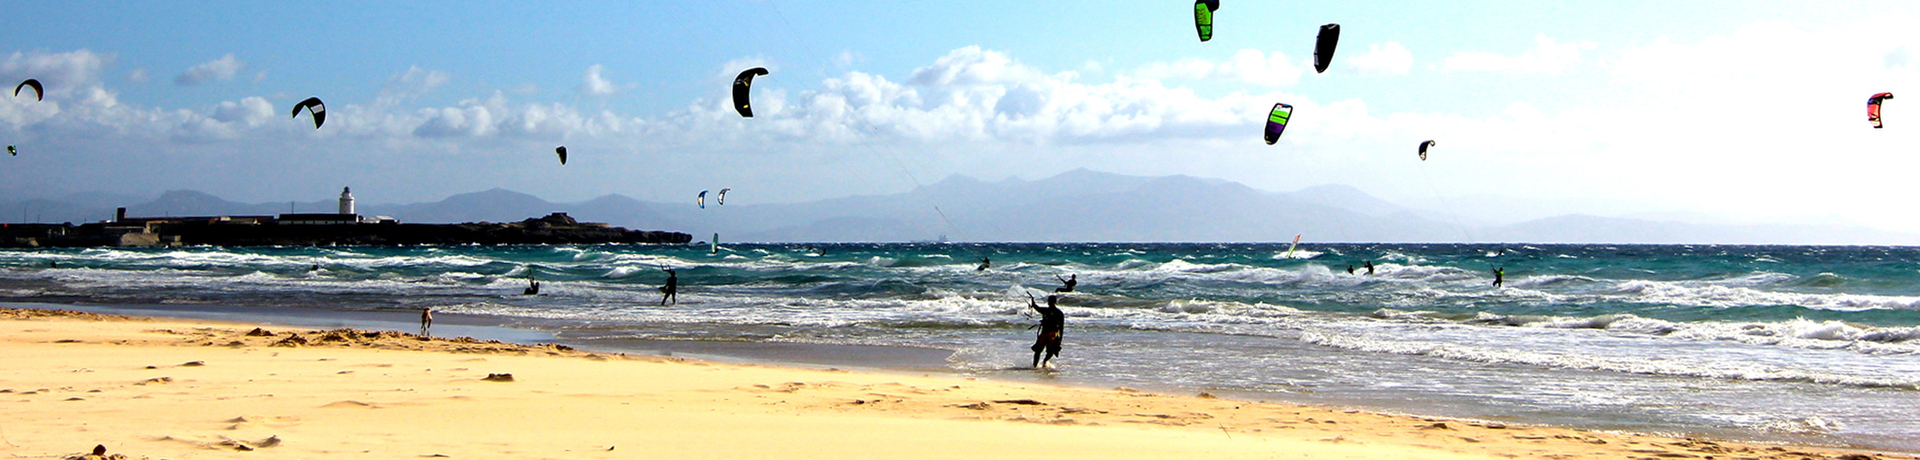 Kitesurfing lessons beginner in Tarifa - 3 or 4 hours